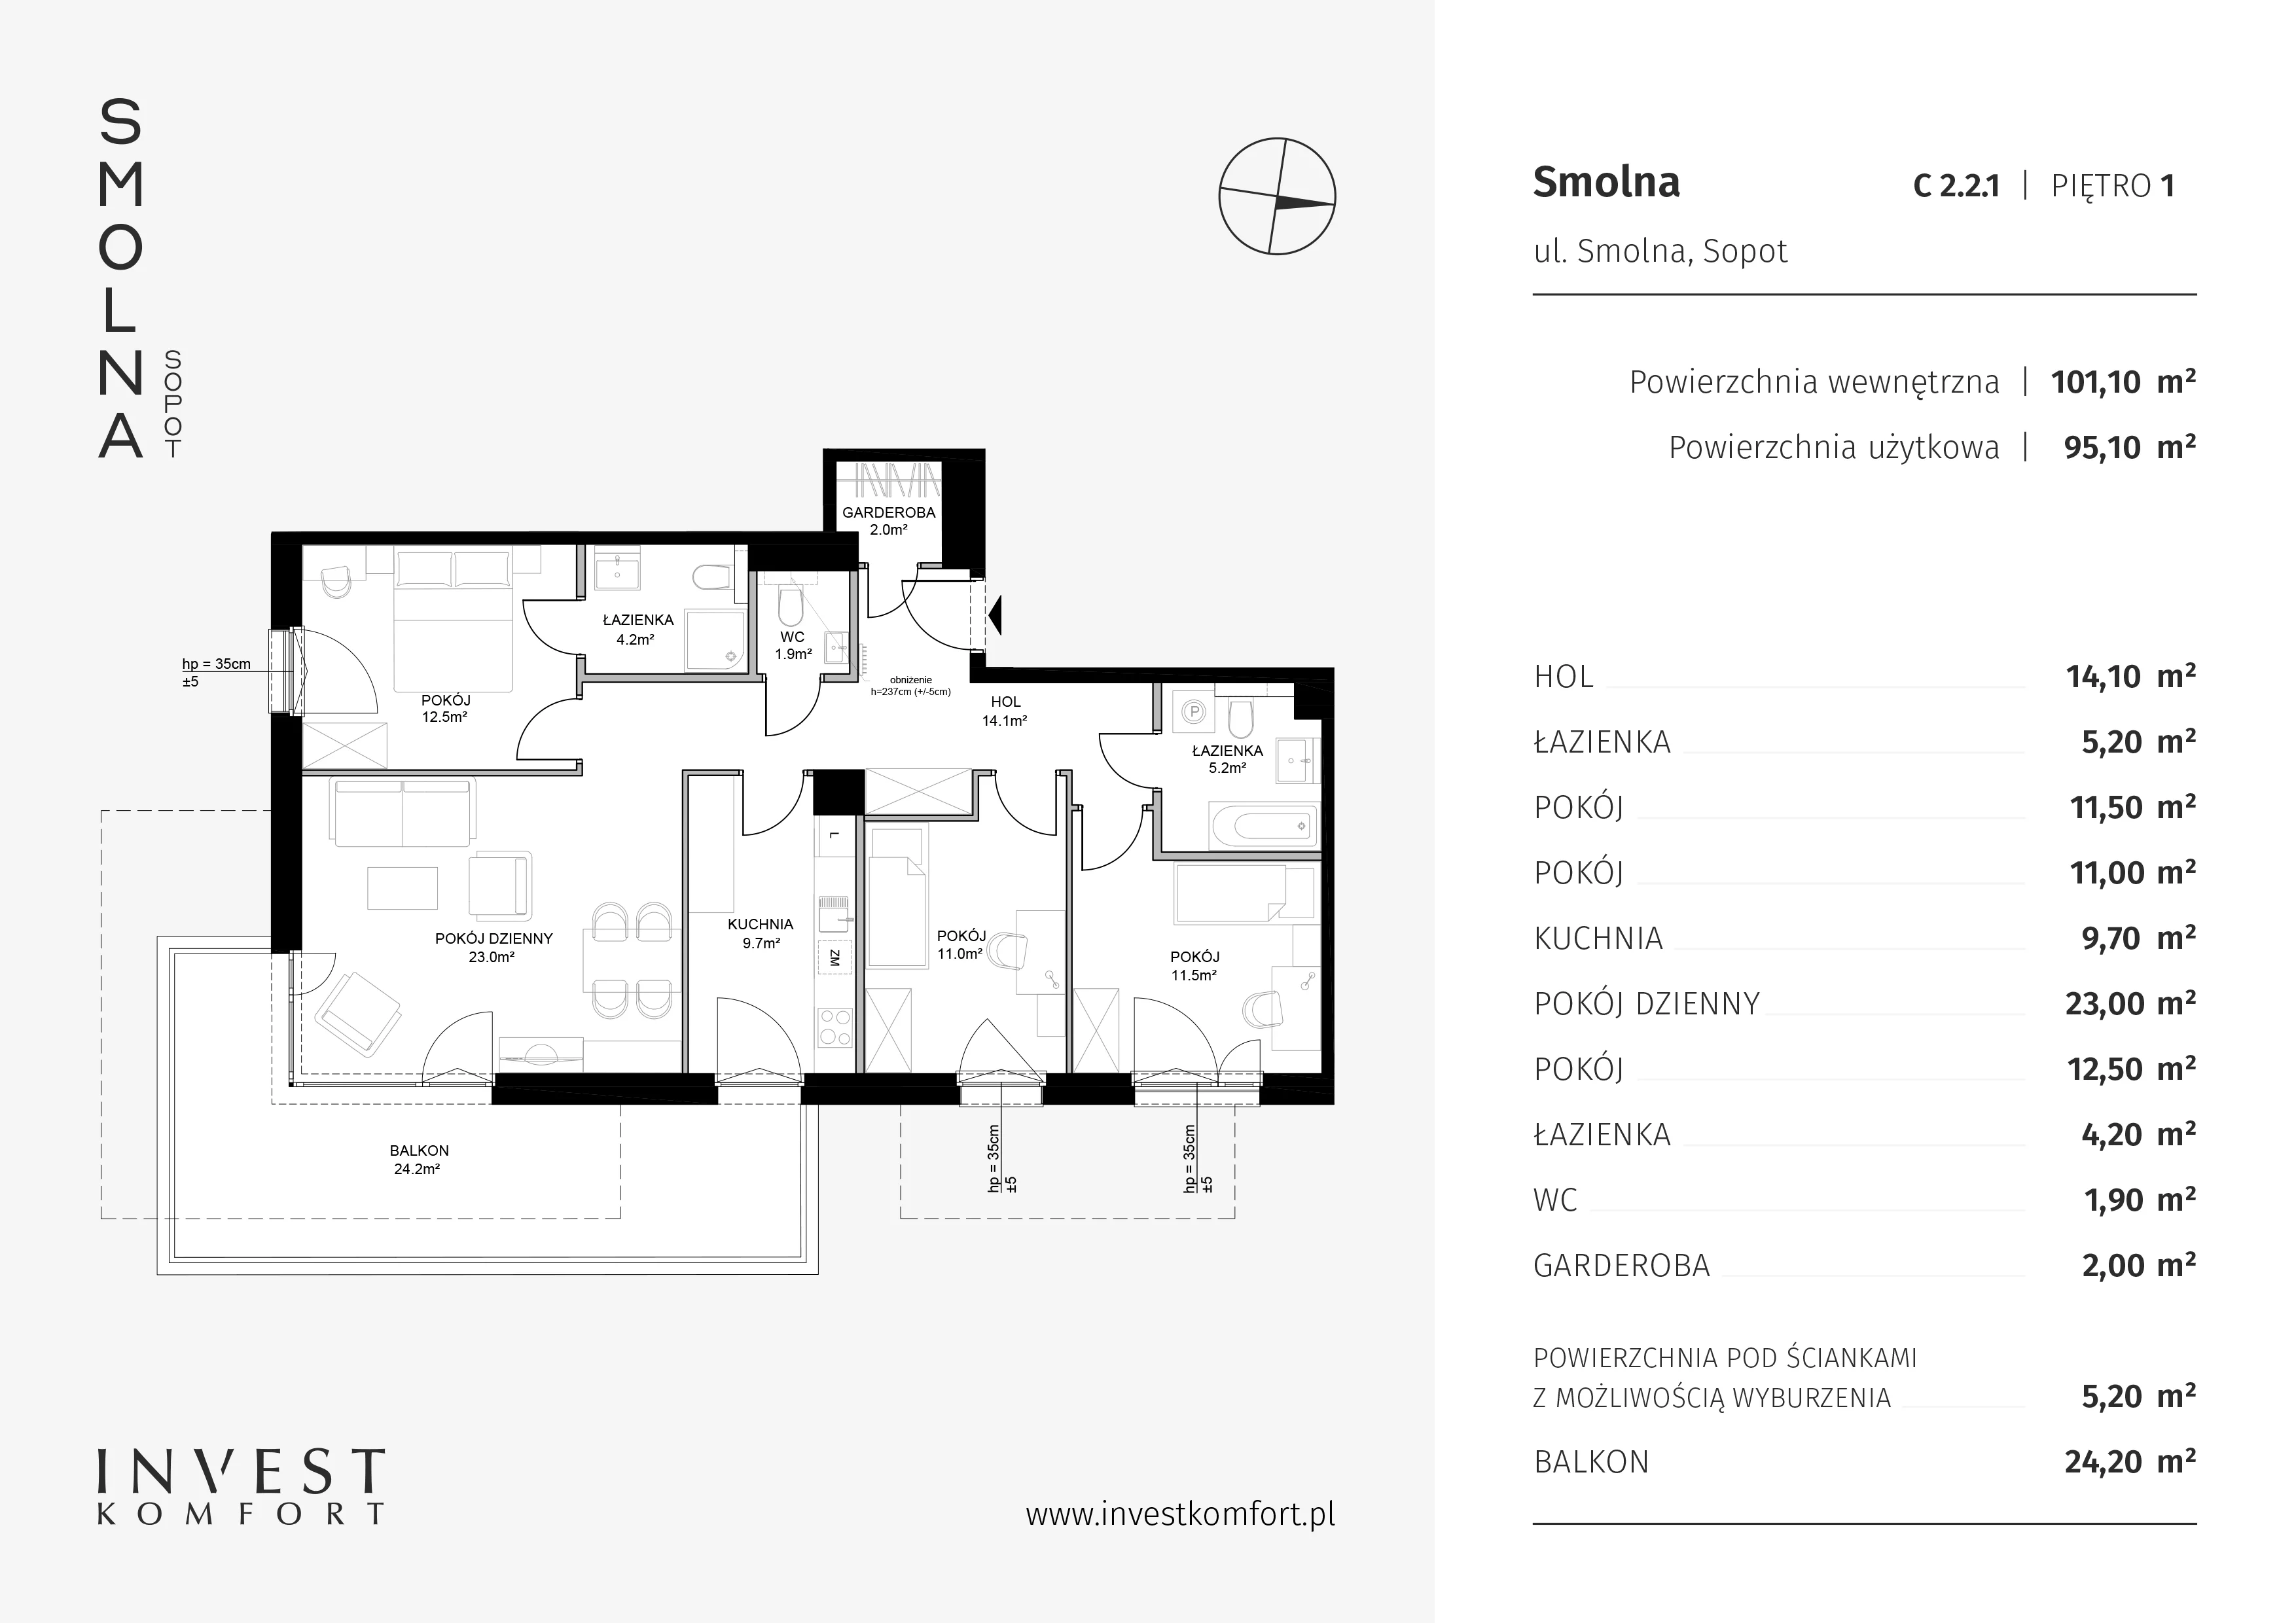 Mieszkanie 101,10 m², piętro 1, oferta nr C2.2.1, Smolna, Sopot, Świemirowo, ul. Smolna